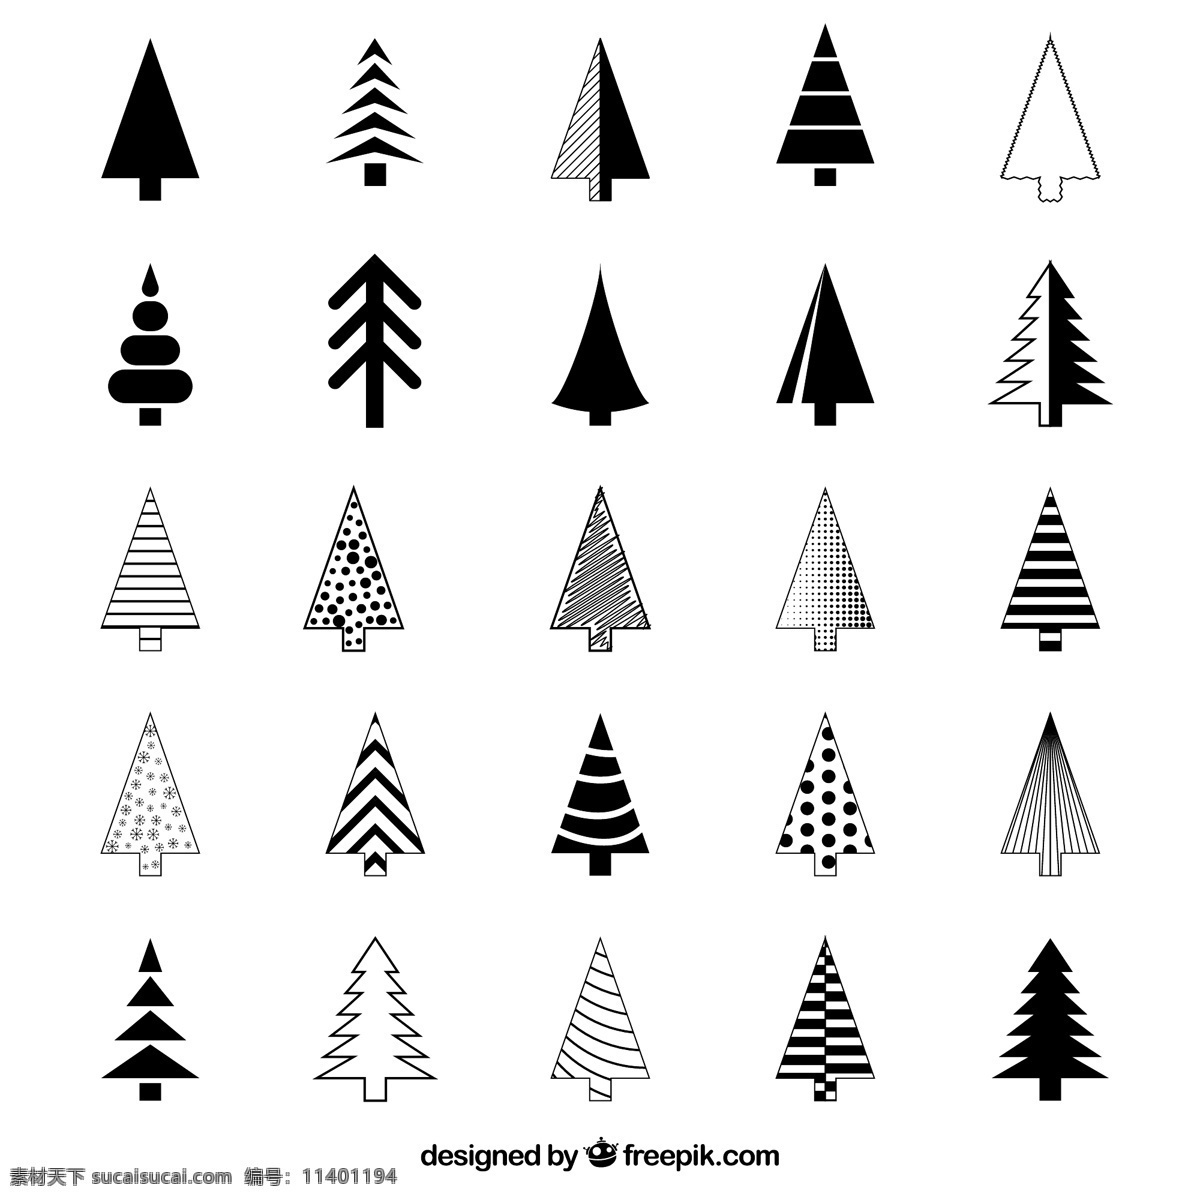 圣诞节 元素 黑白 图标 圣诞节元素 圣诞树 简约风格 树的形状 树小图标